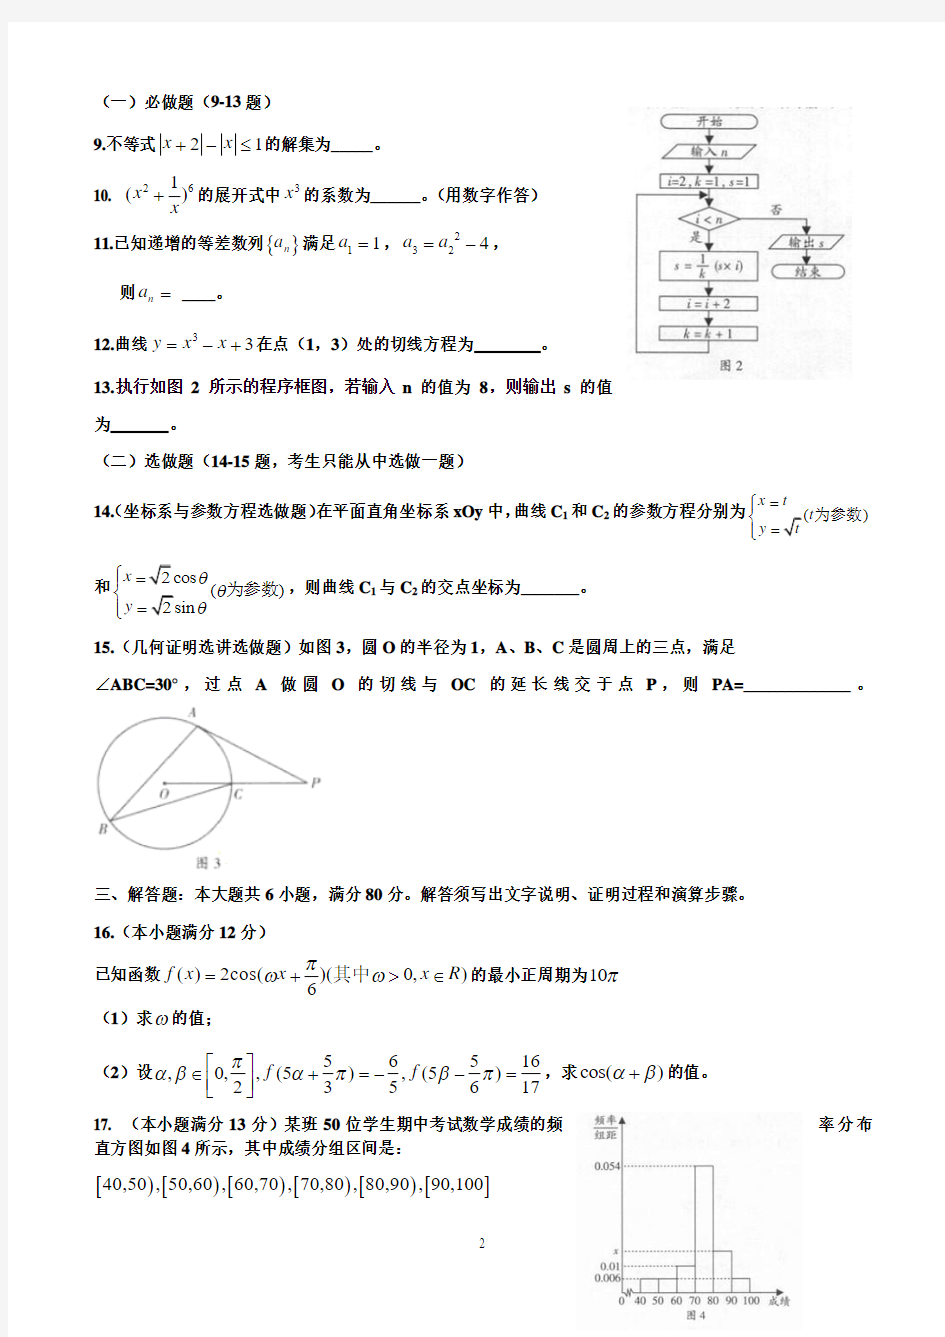 2012年高考数学理科(广东卷)解析